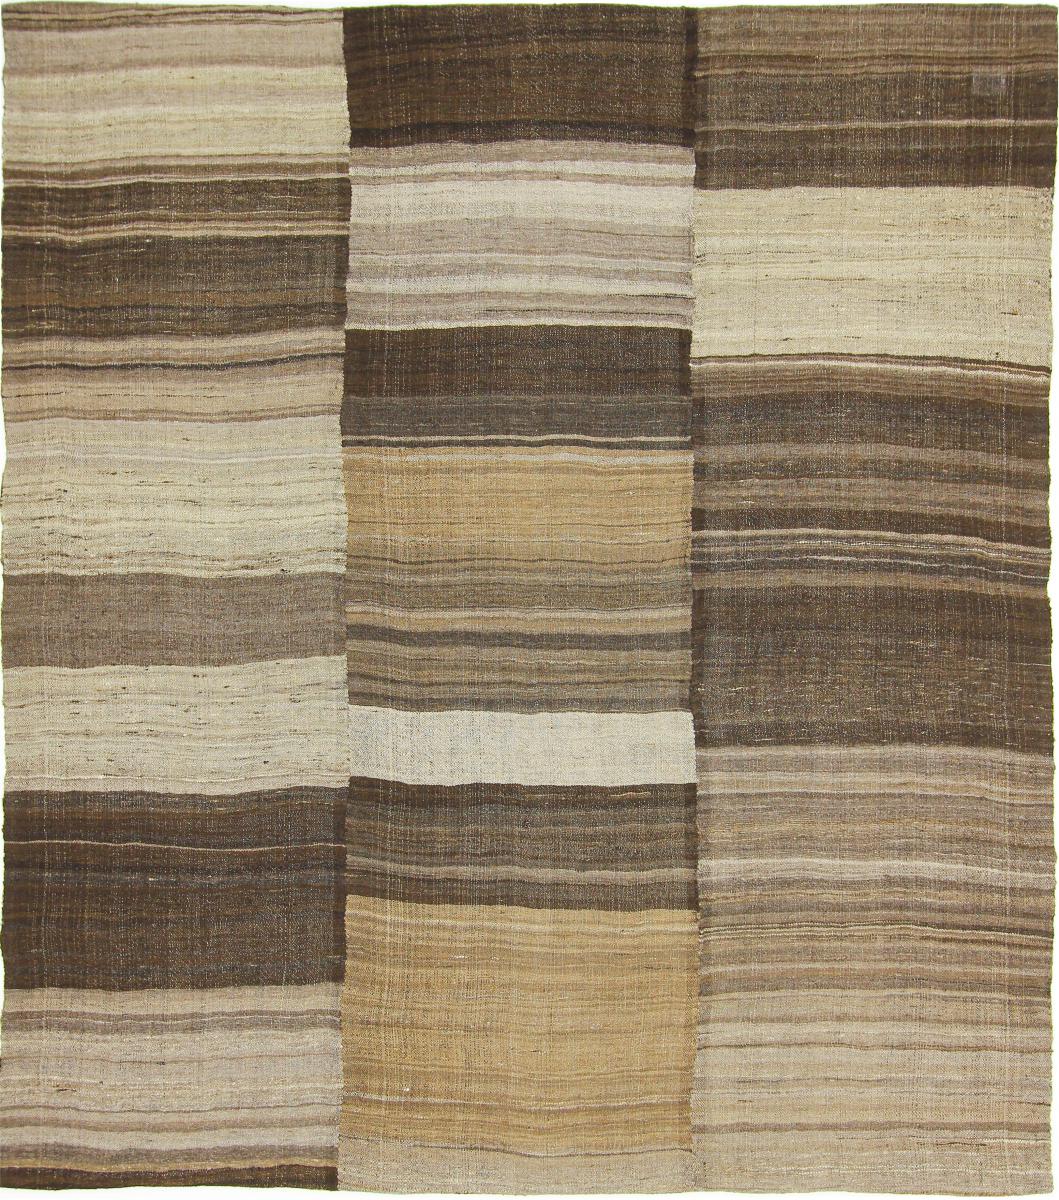 Perzsa szőnyeg Kilim Fars Mazandaran 7'2"x6'5" 7'2"x6'5", Perzsa szőnyeg szőttesek